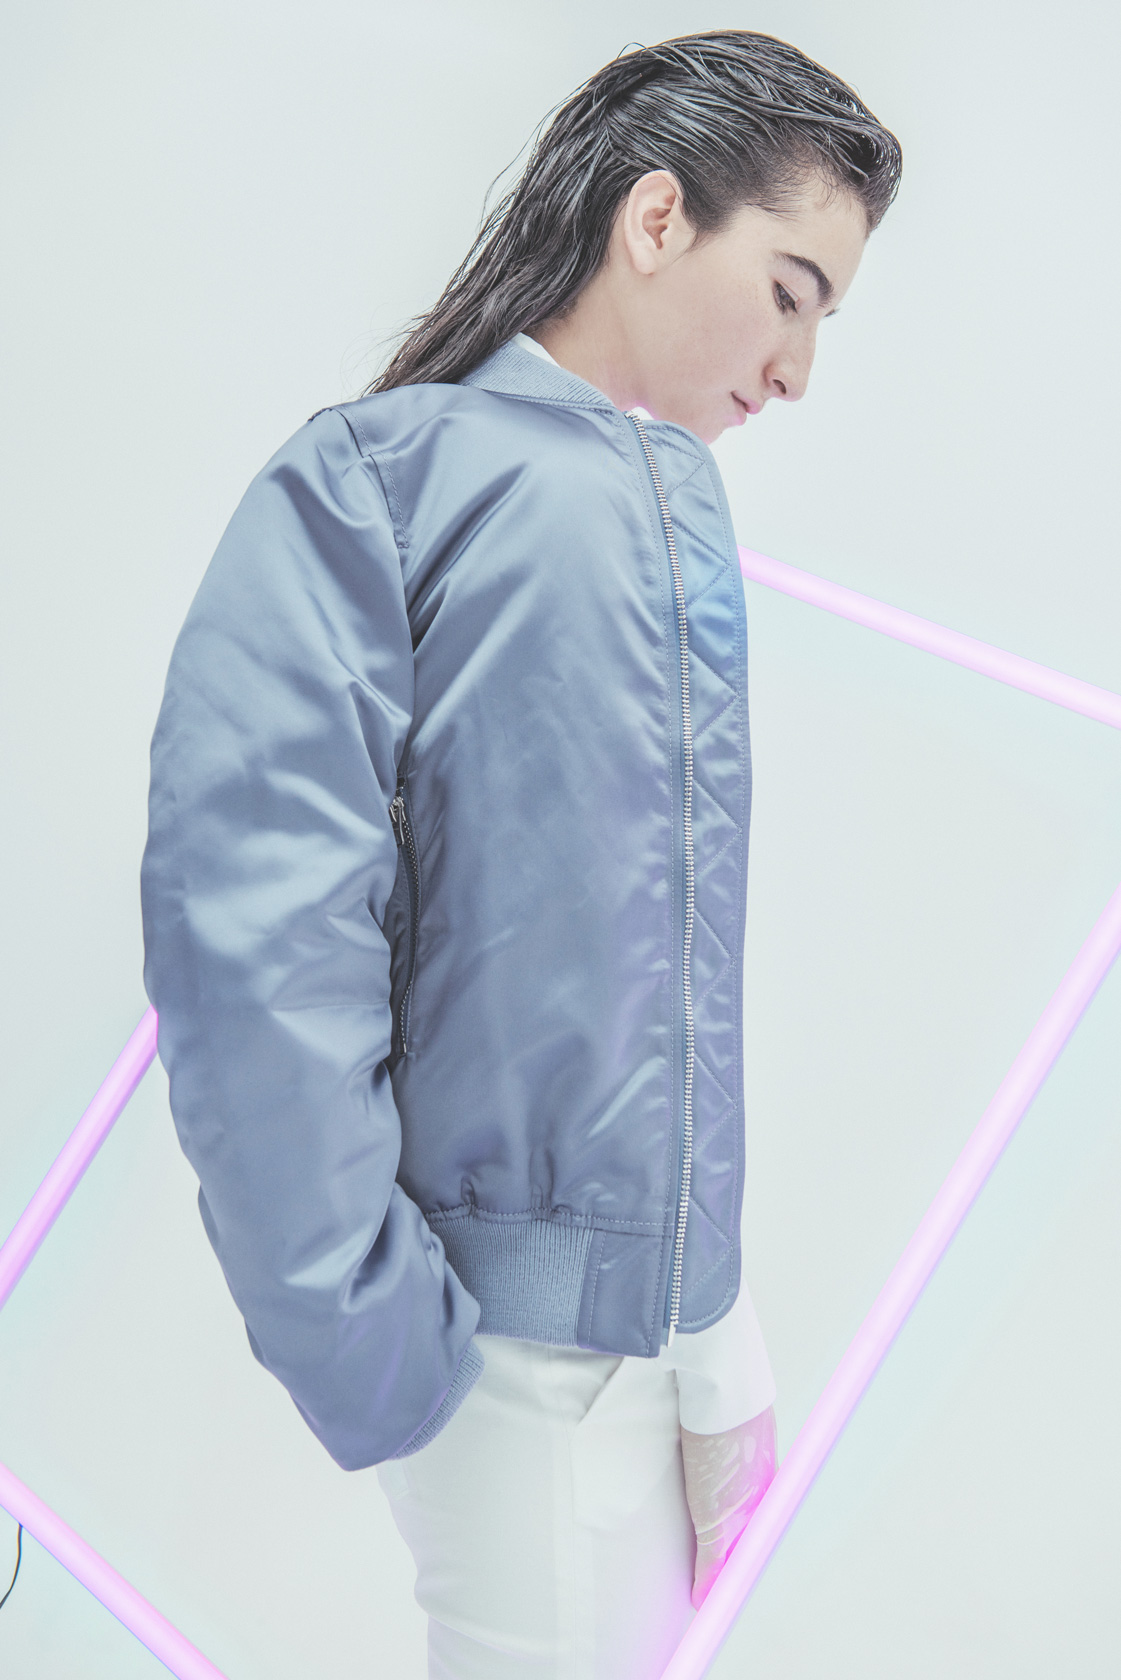 Бомбър Acne Studios от Plus Zero Concept Store, панталон Marella, риза H&M